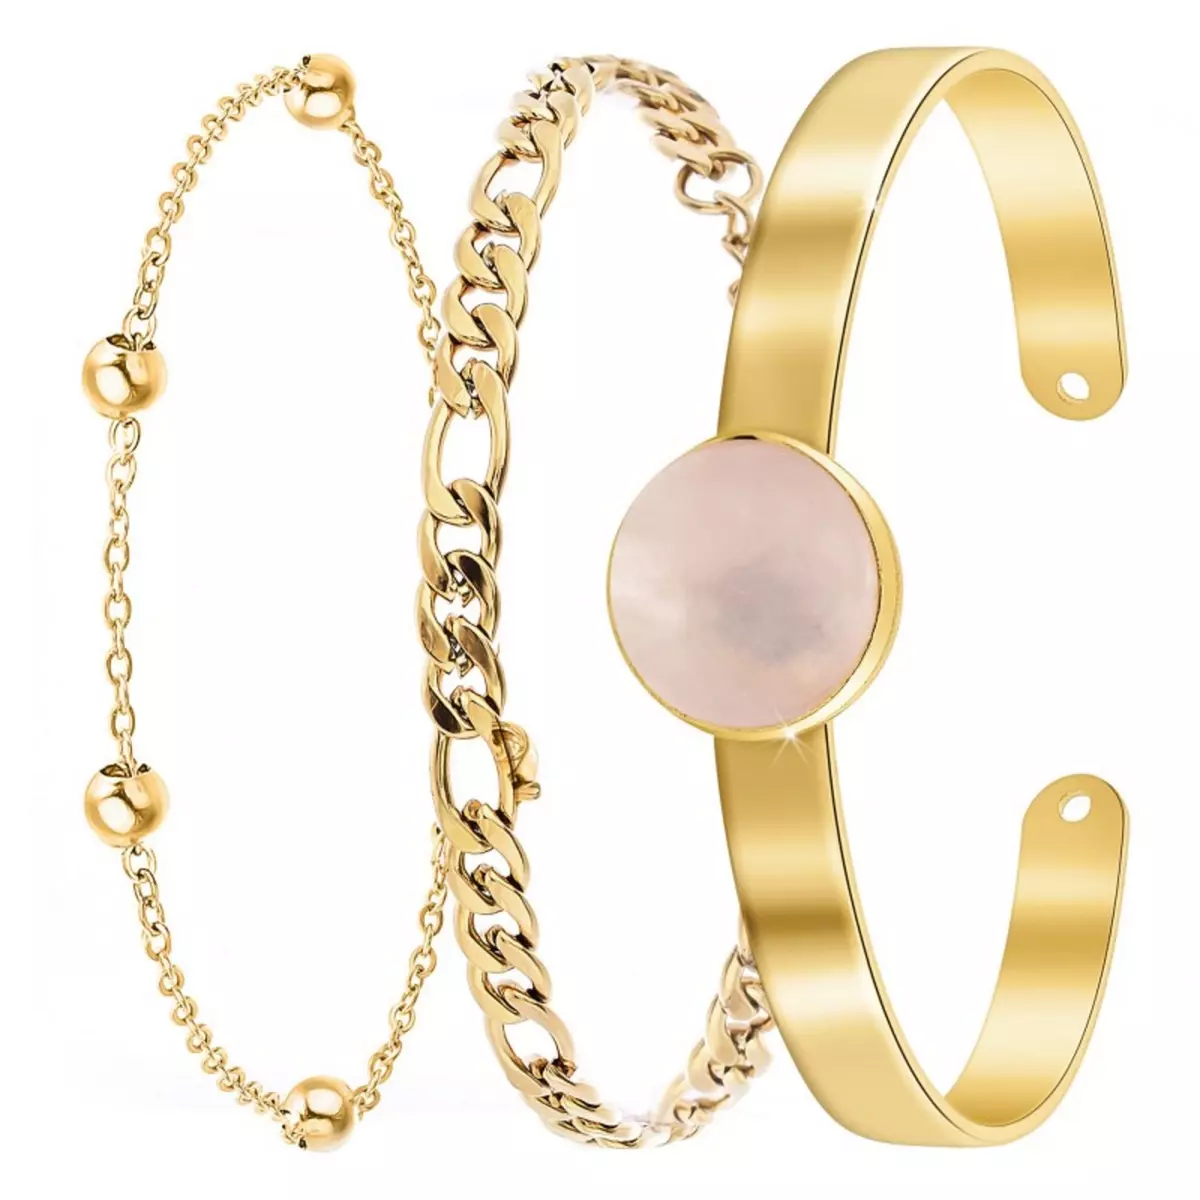  Lot de 3 bracelets SC Bohème en Laiton Finement doré orné d'un quartz rose